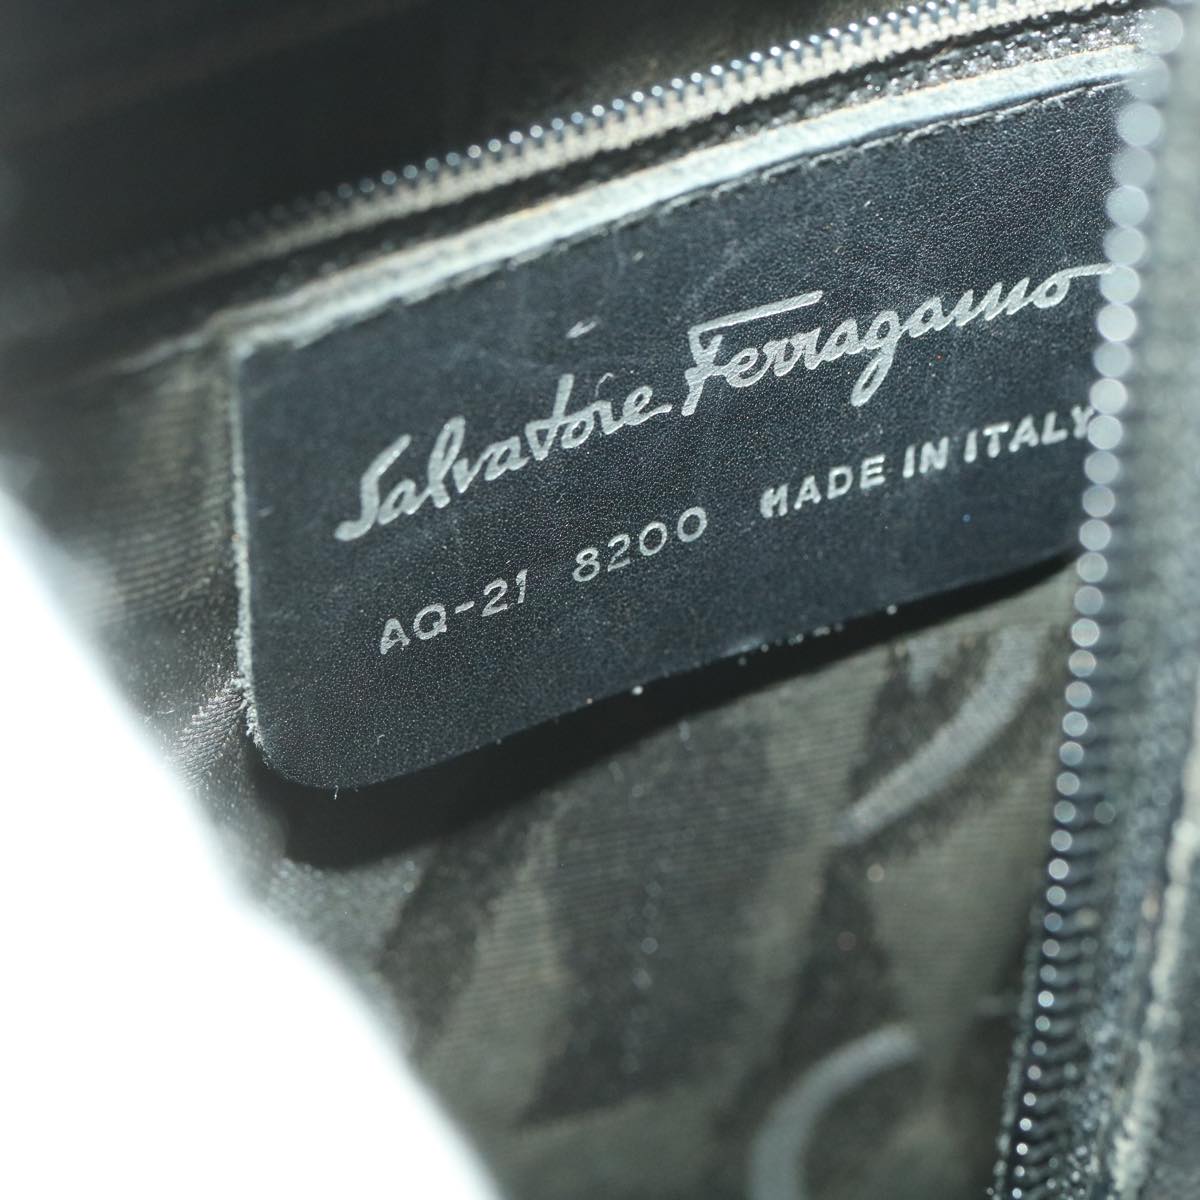 Salvatore Ferragamo Shoulder Bag Leather Black AQ-21 8200 Auth ro934